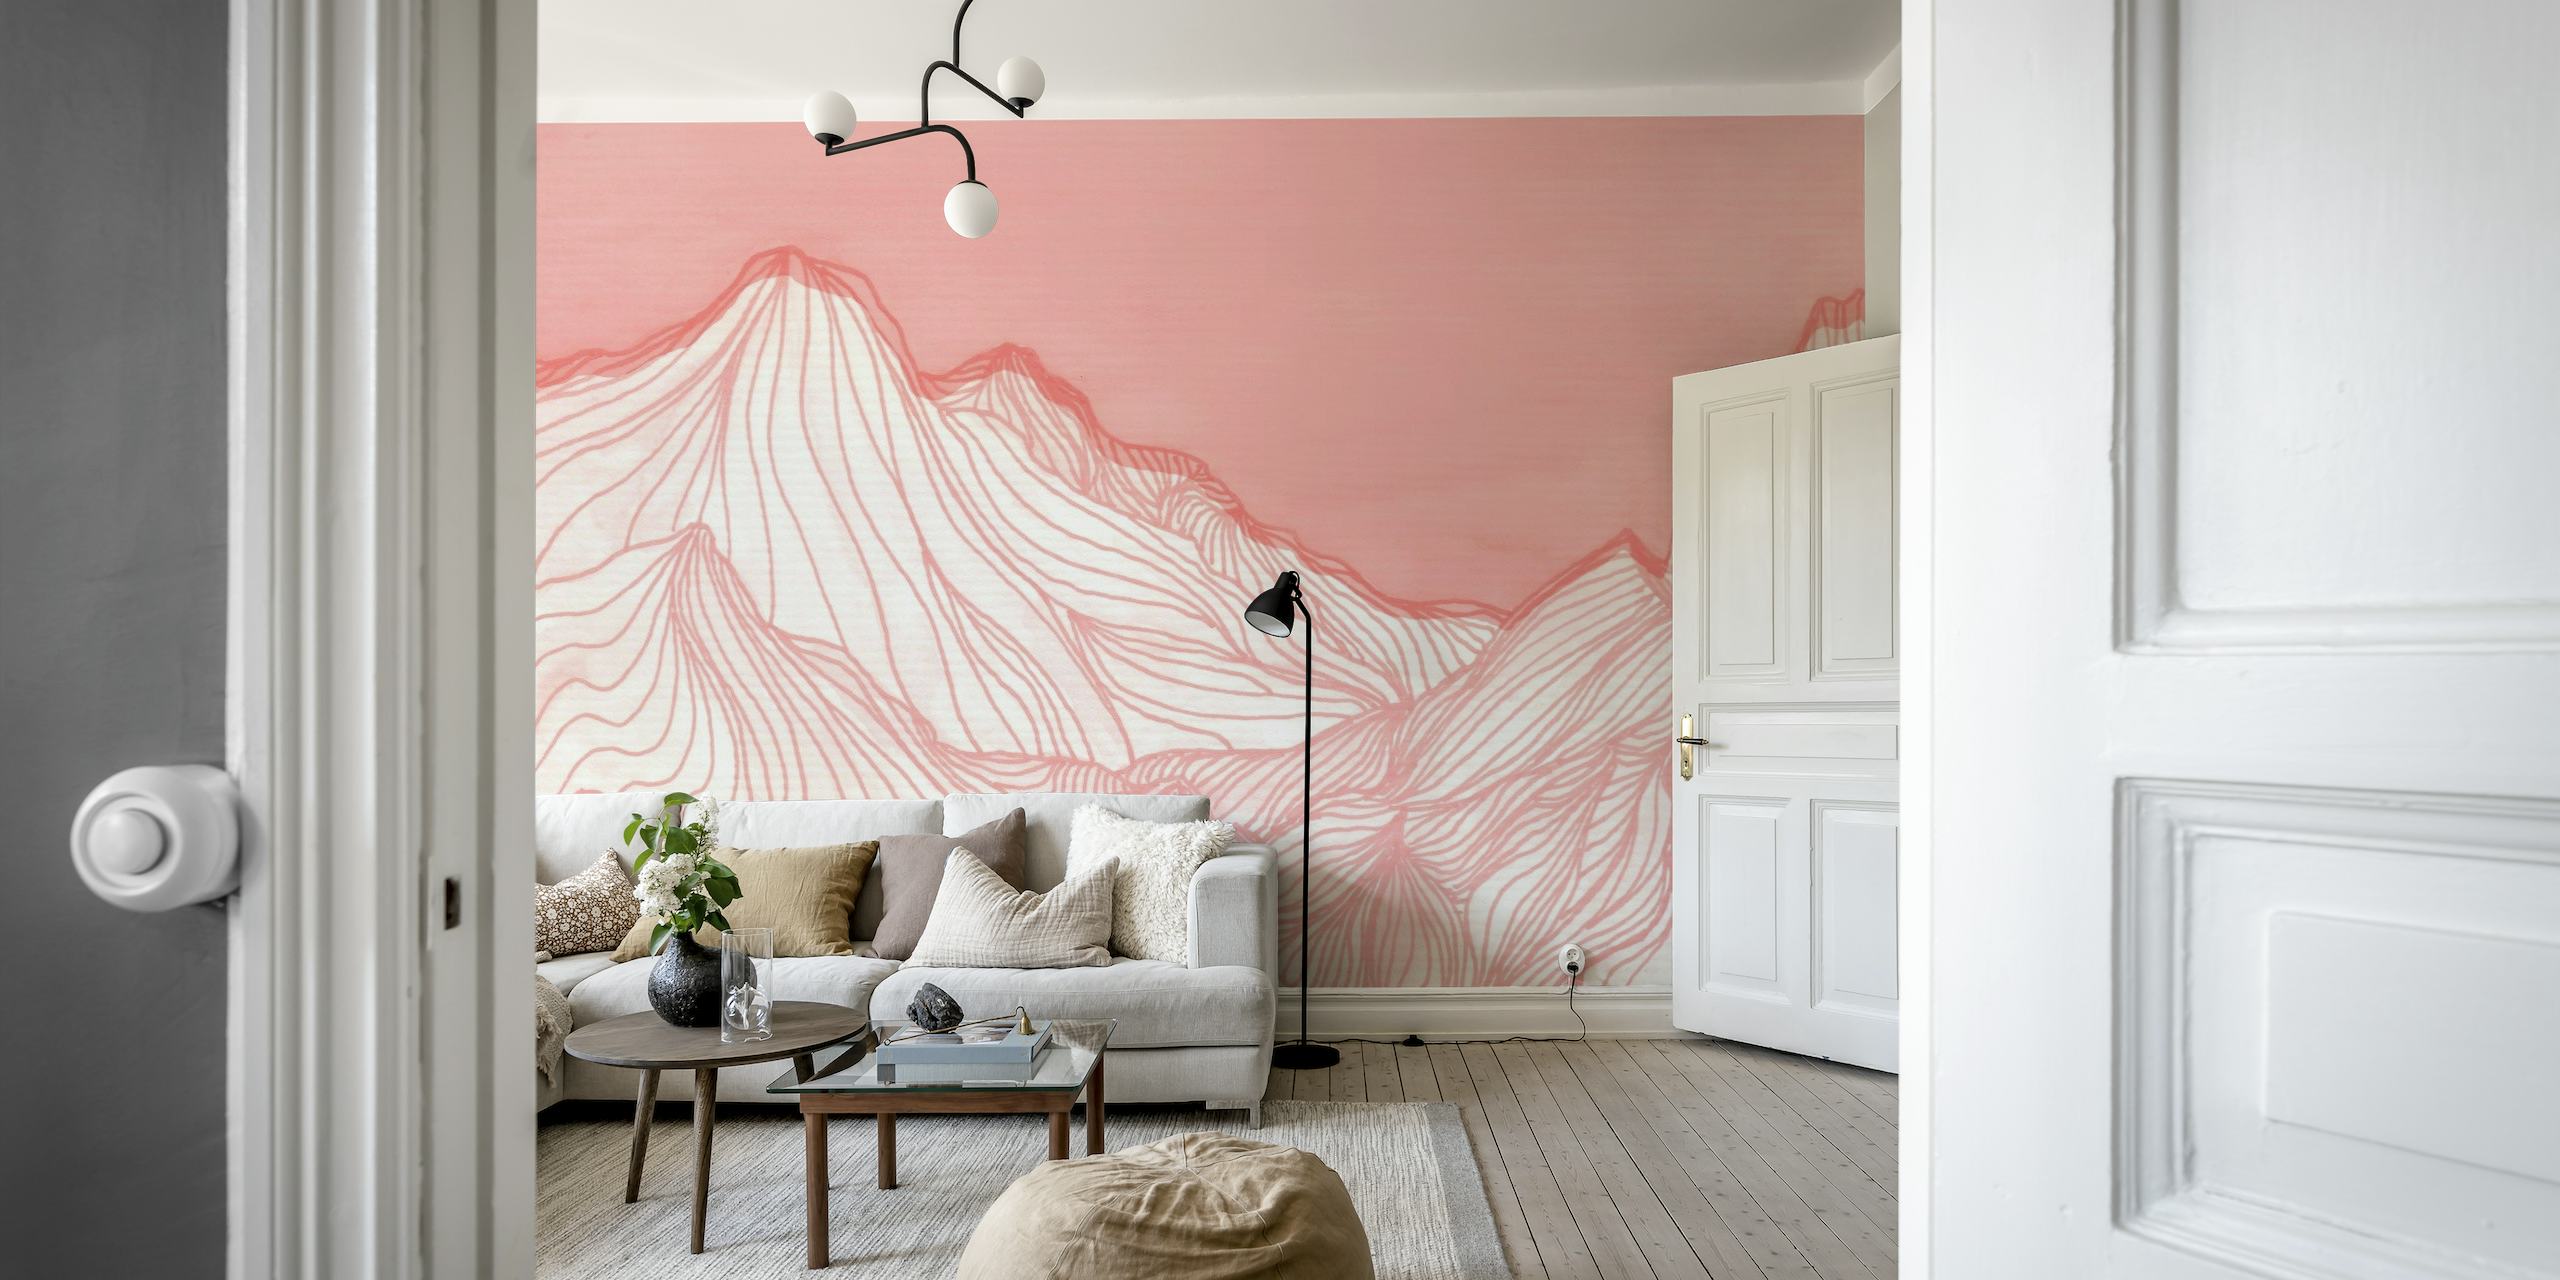 Abstrakt pink og hvid stregkunst af bjergtoppe, der danner et fredfyldt vægmaleri